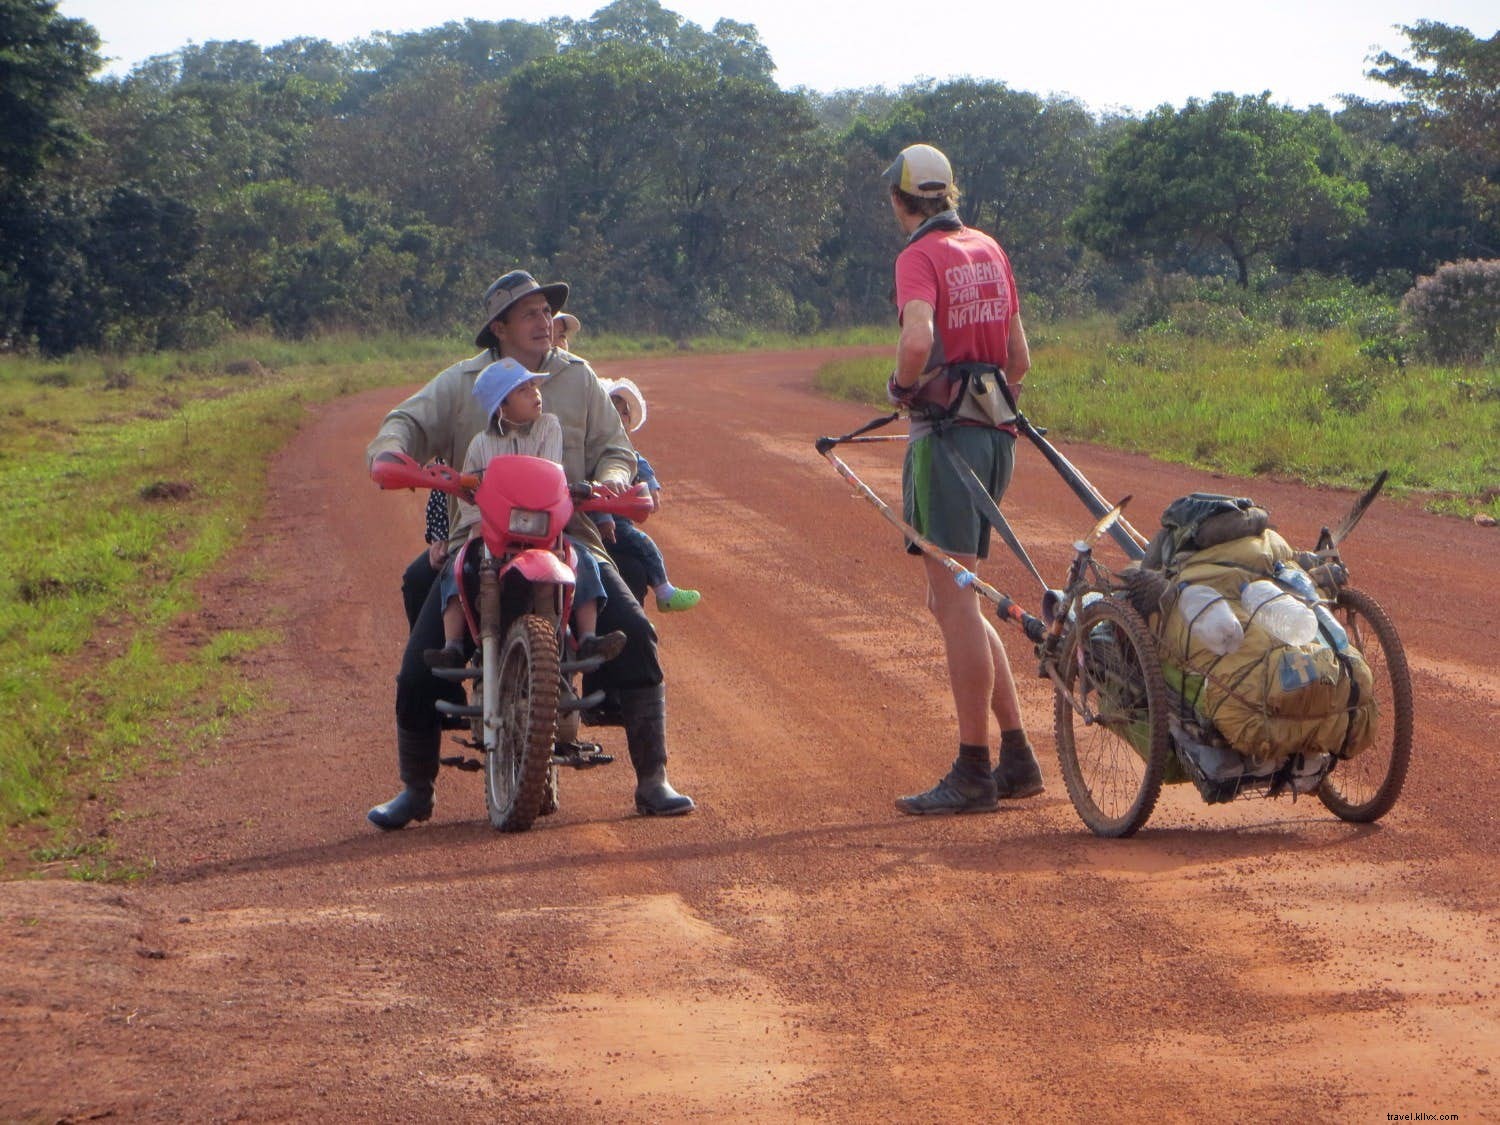 「最も美しくシンプルな存在」：あるカップルが南アメリカを5000マイル走った経験を共有しています 